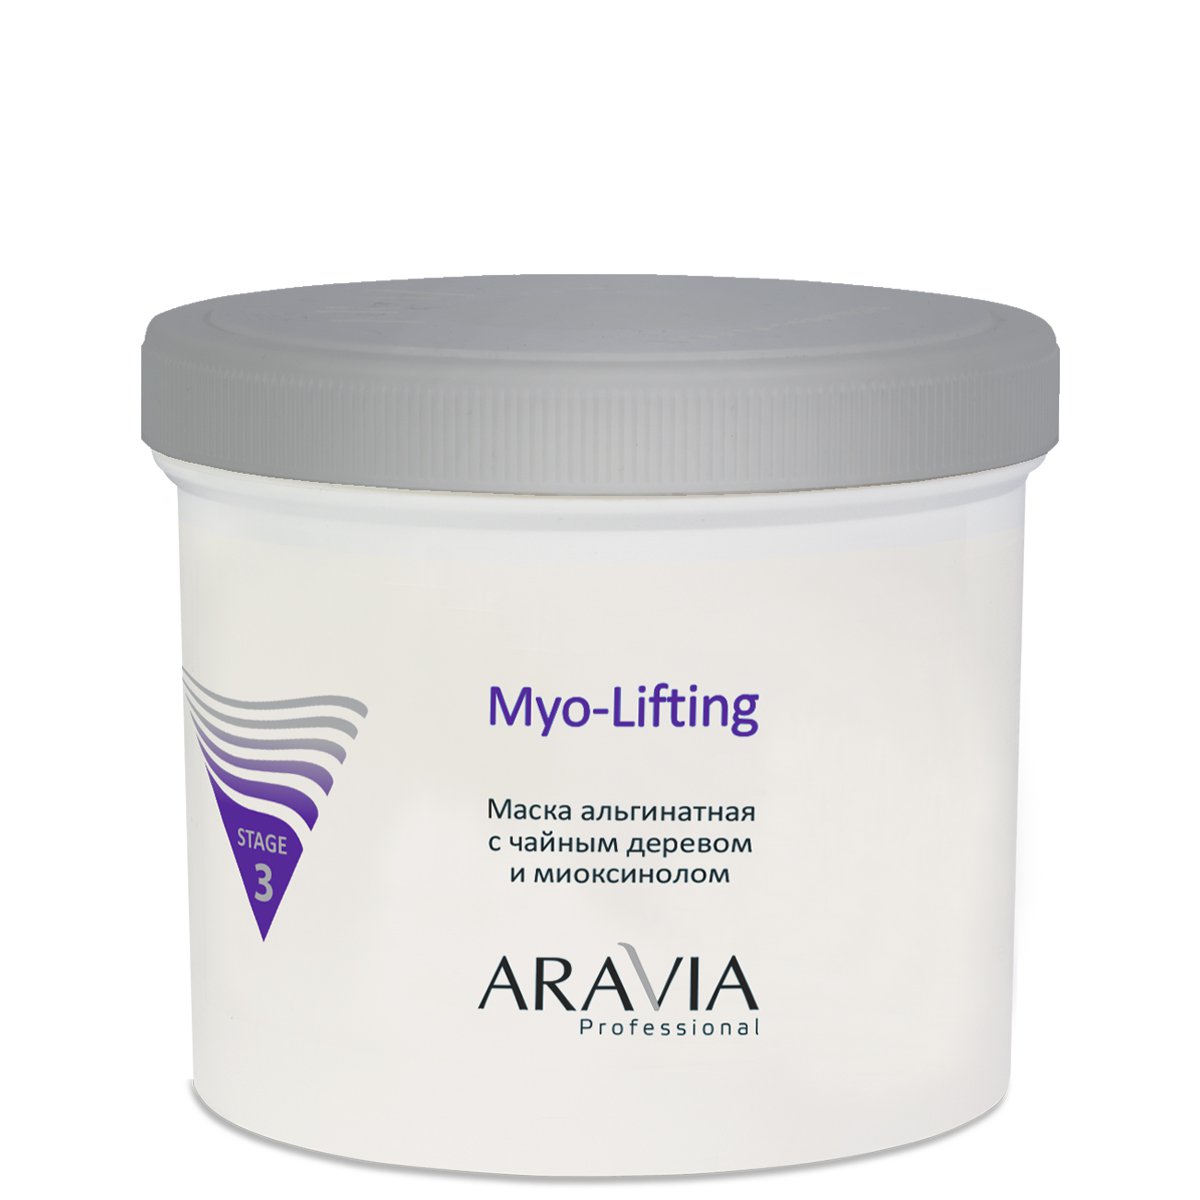 ARAVIA Professional Маска альгинатная с чайным деревом и миоксинолом Myo-Lifting, 550 мл.